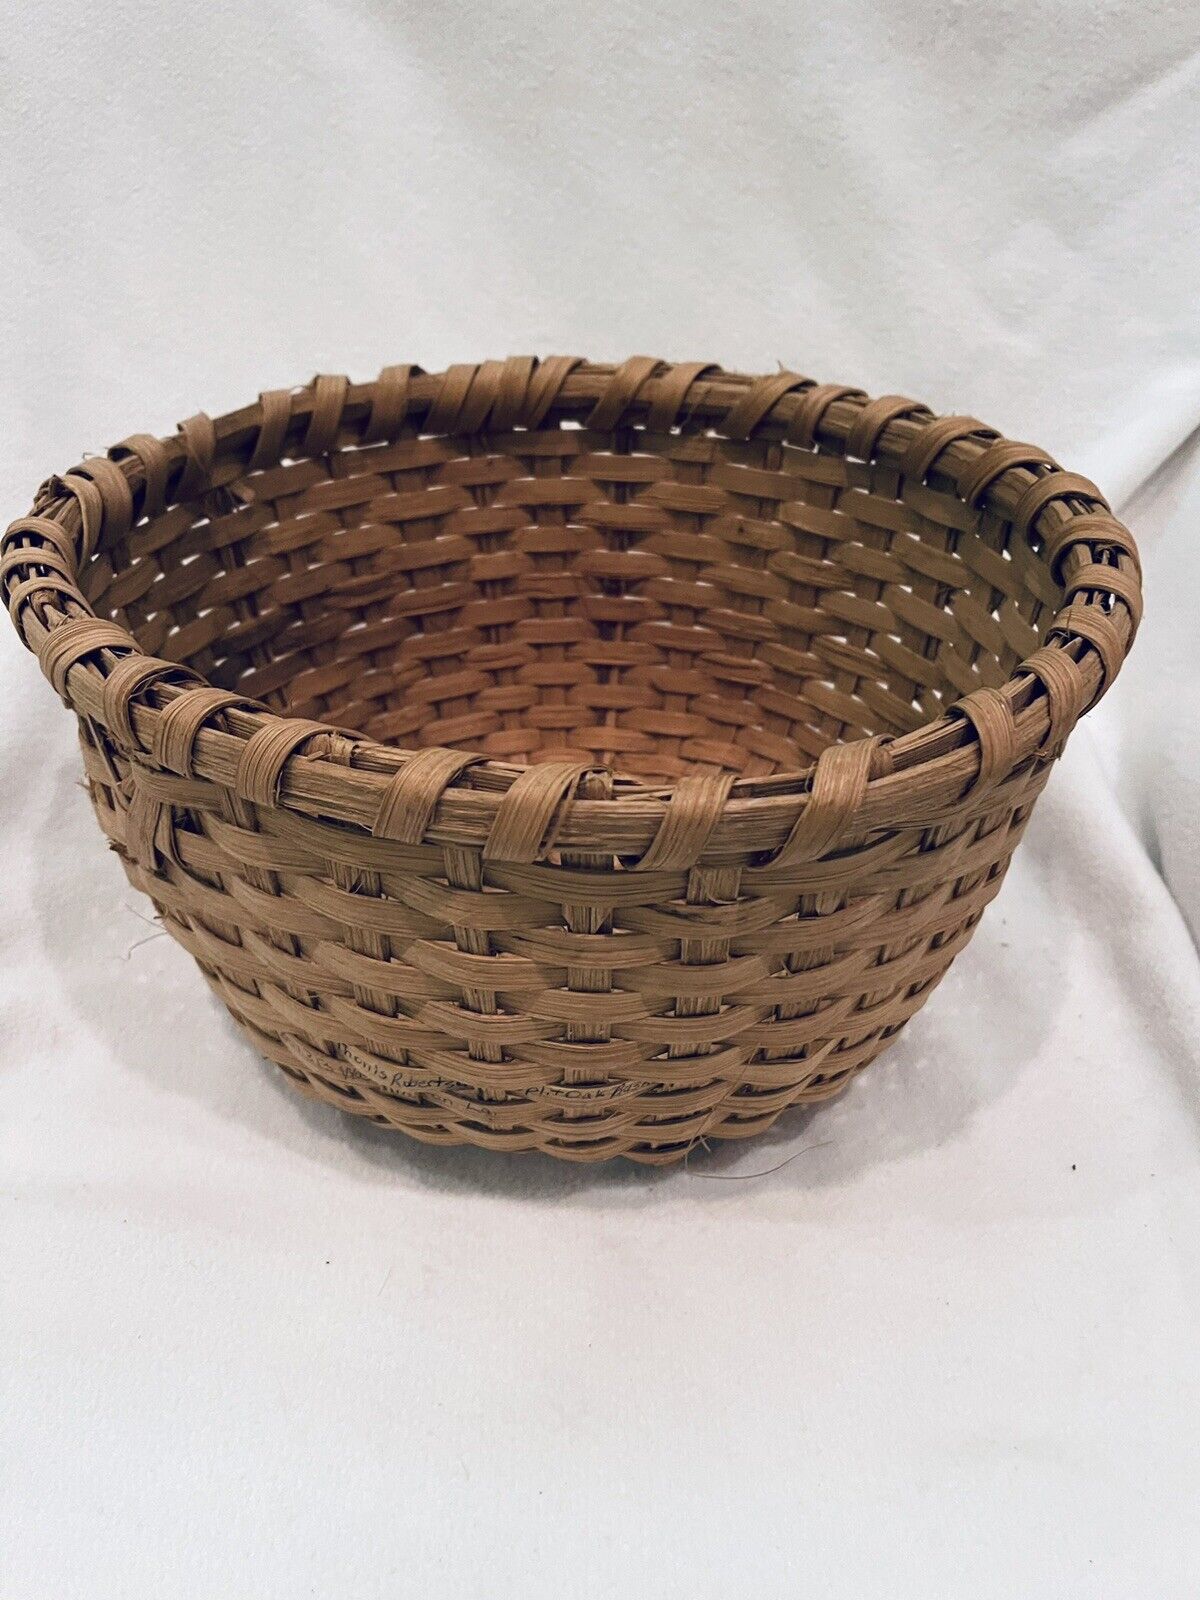 Antique Early 1900s Round Split Oak Nantucket Basket Handmade 12” Across 6” Tall